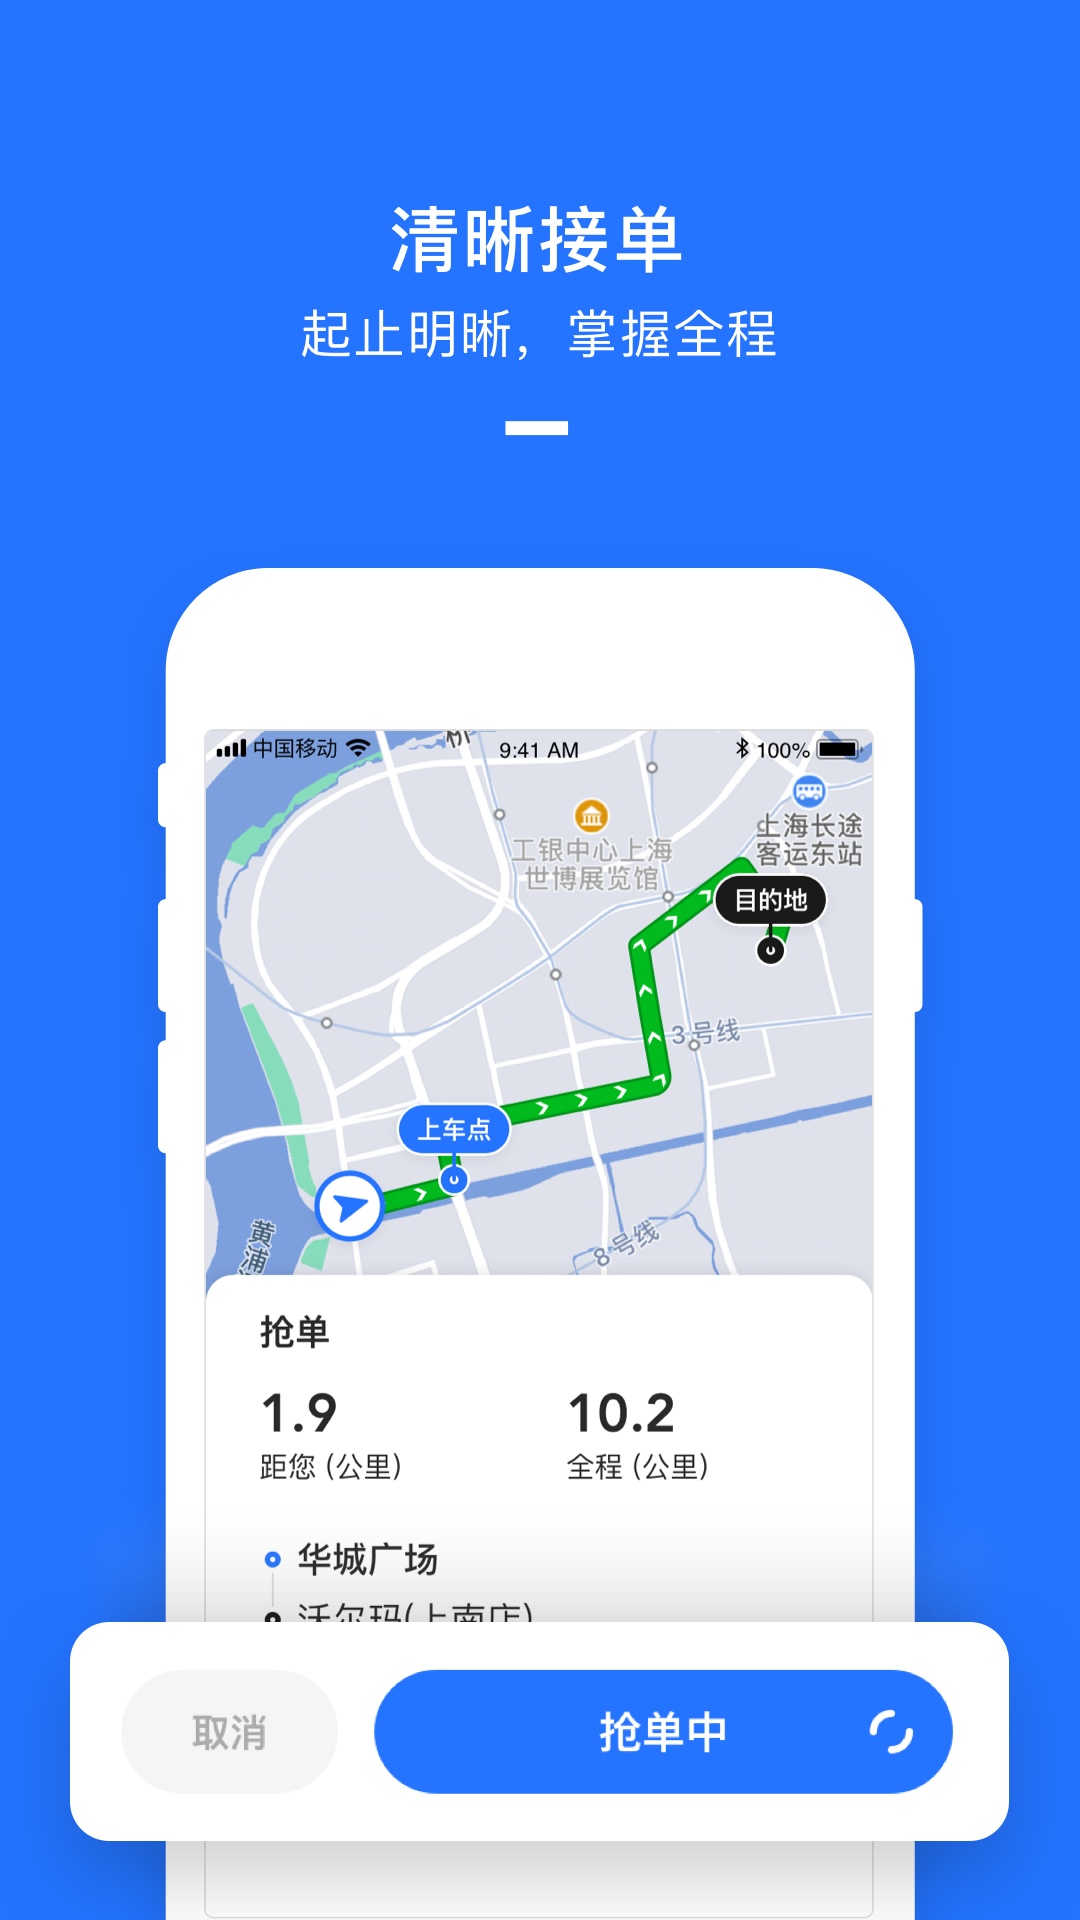 美团打车司机端App软件2.8.25